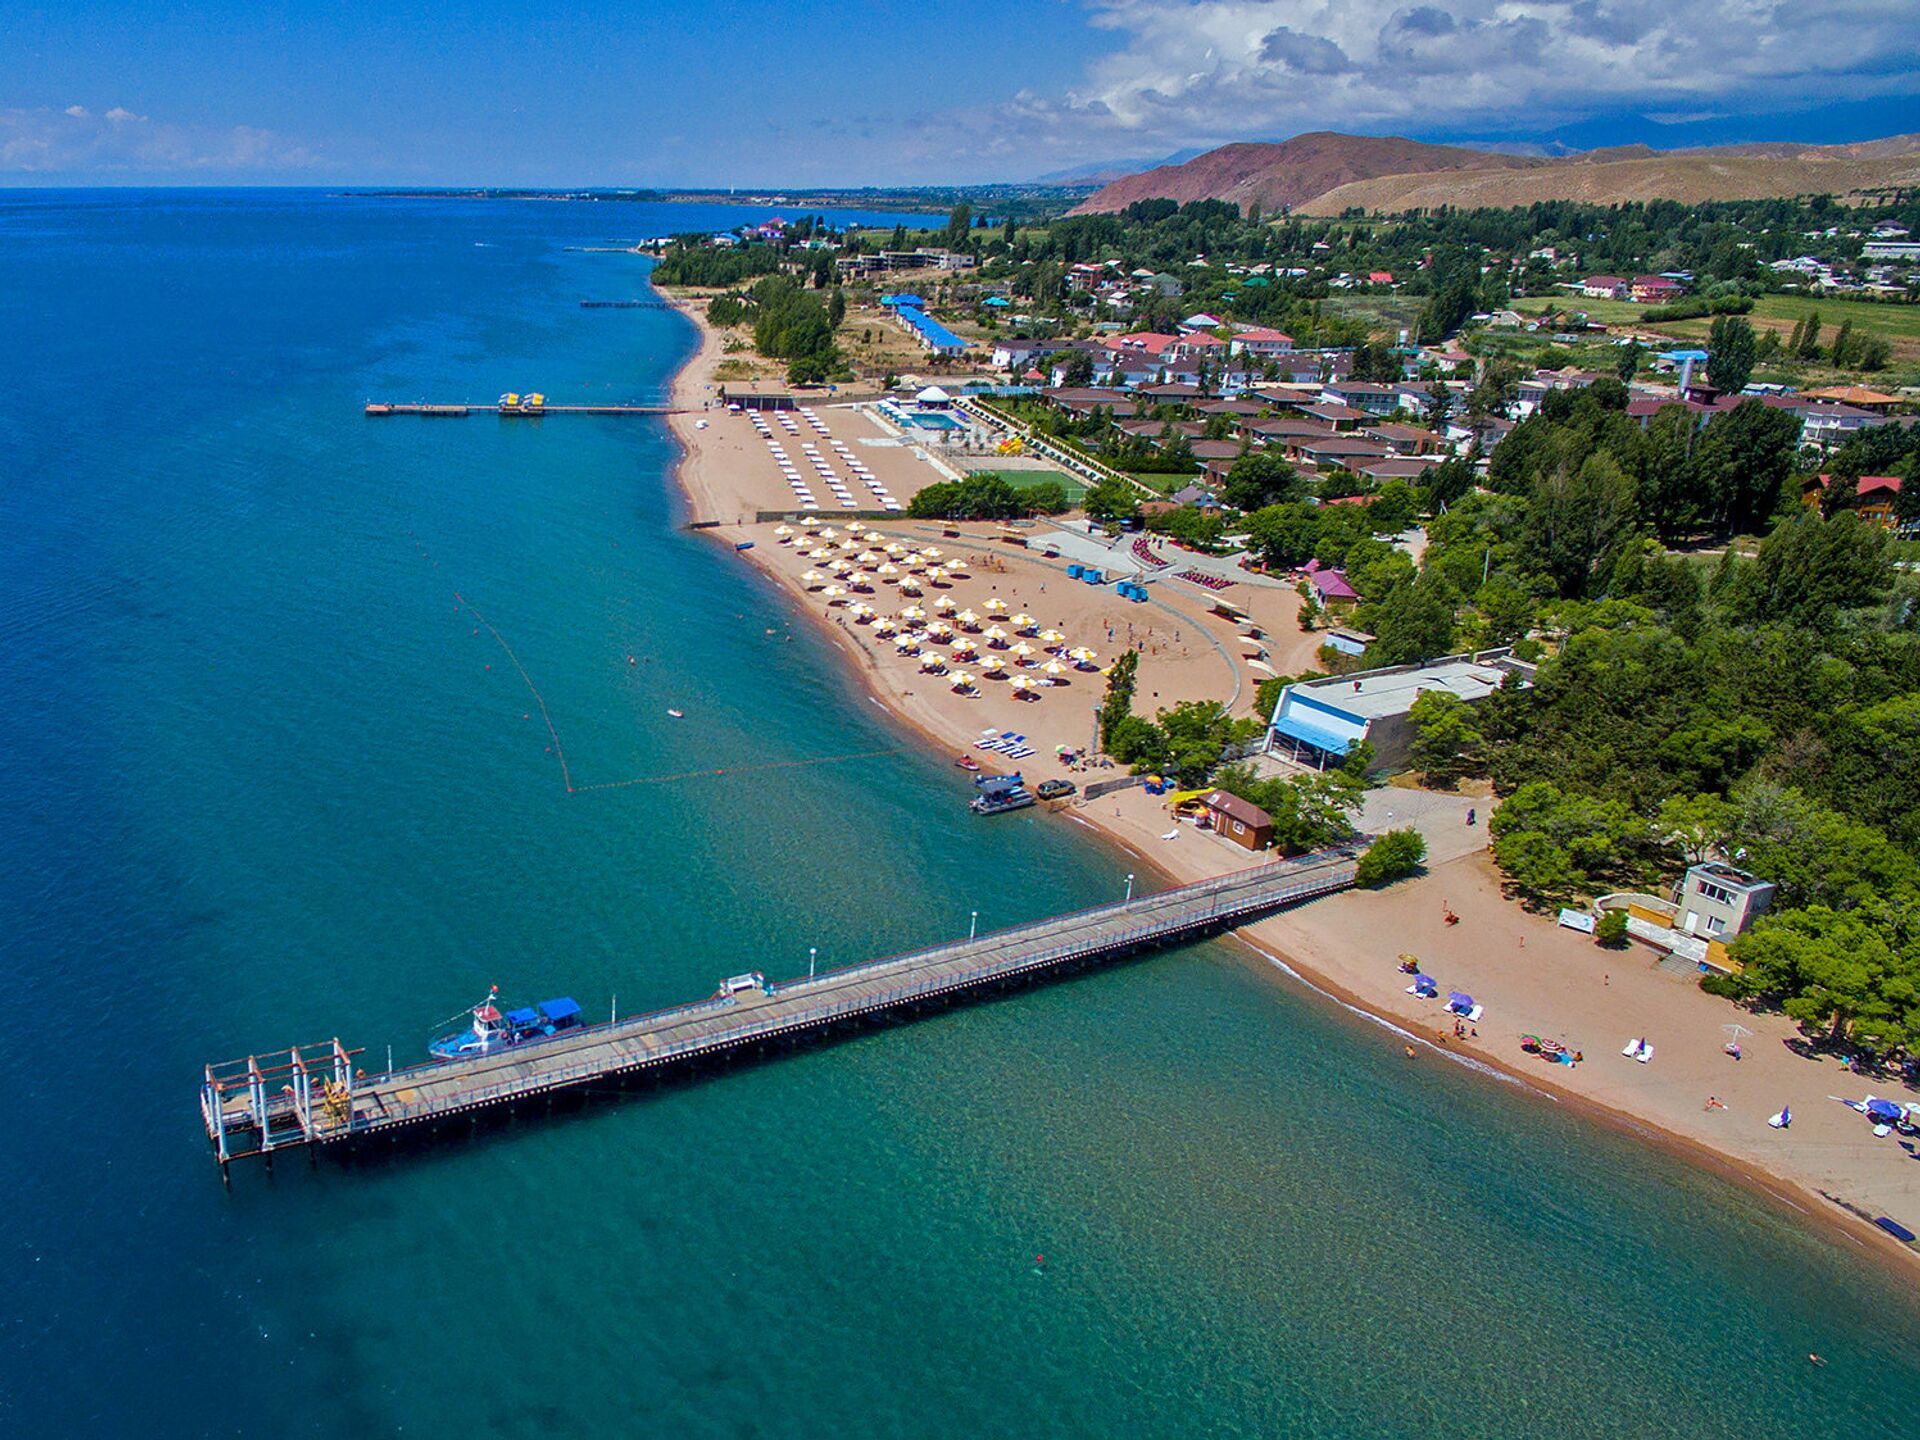 Свободный доступ на пляжи Иссык-Куля теперь есть у всех граждан – президент подписал указ